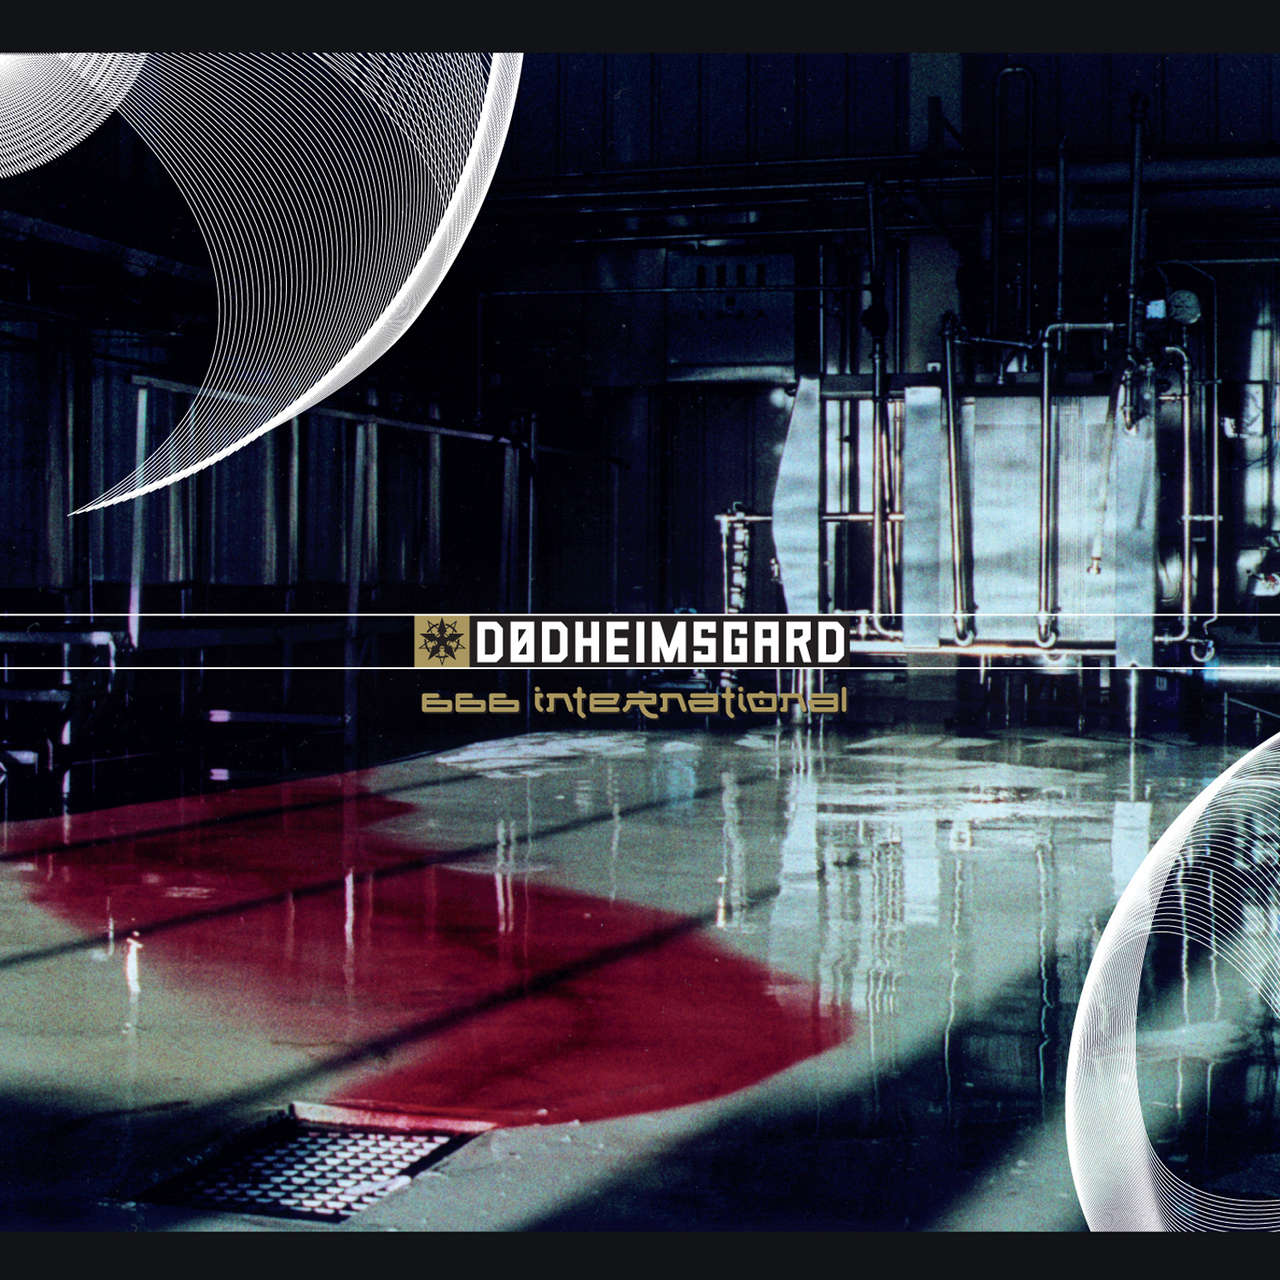 Dodheimsgard - 666 International (2011 Reissue) (CD)